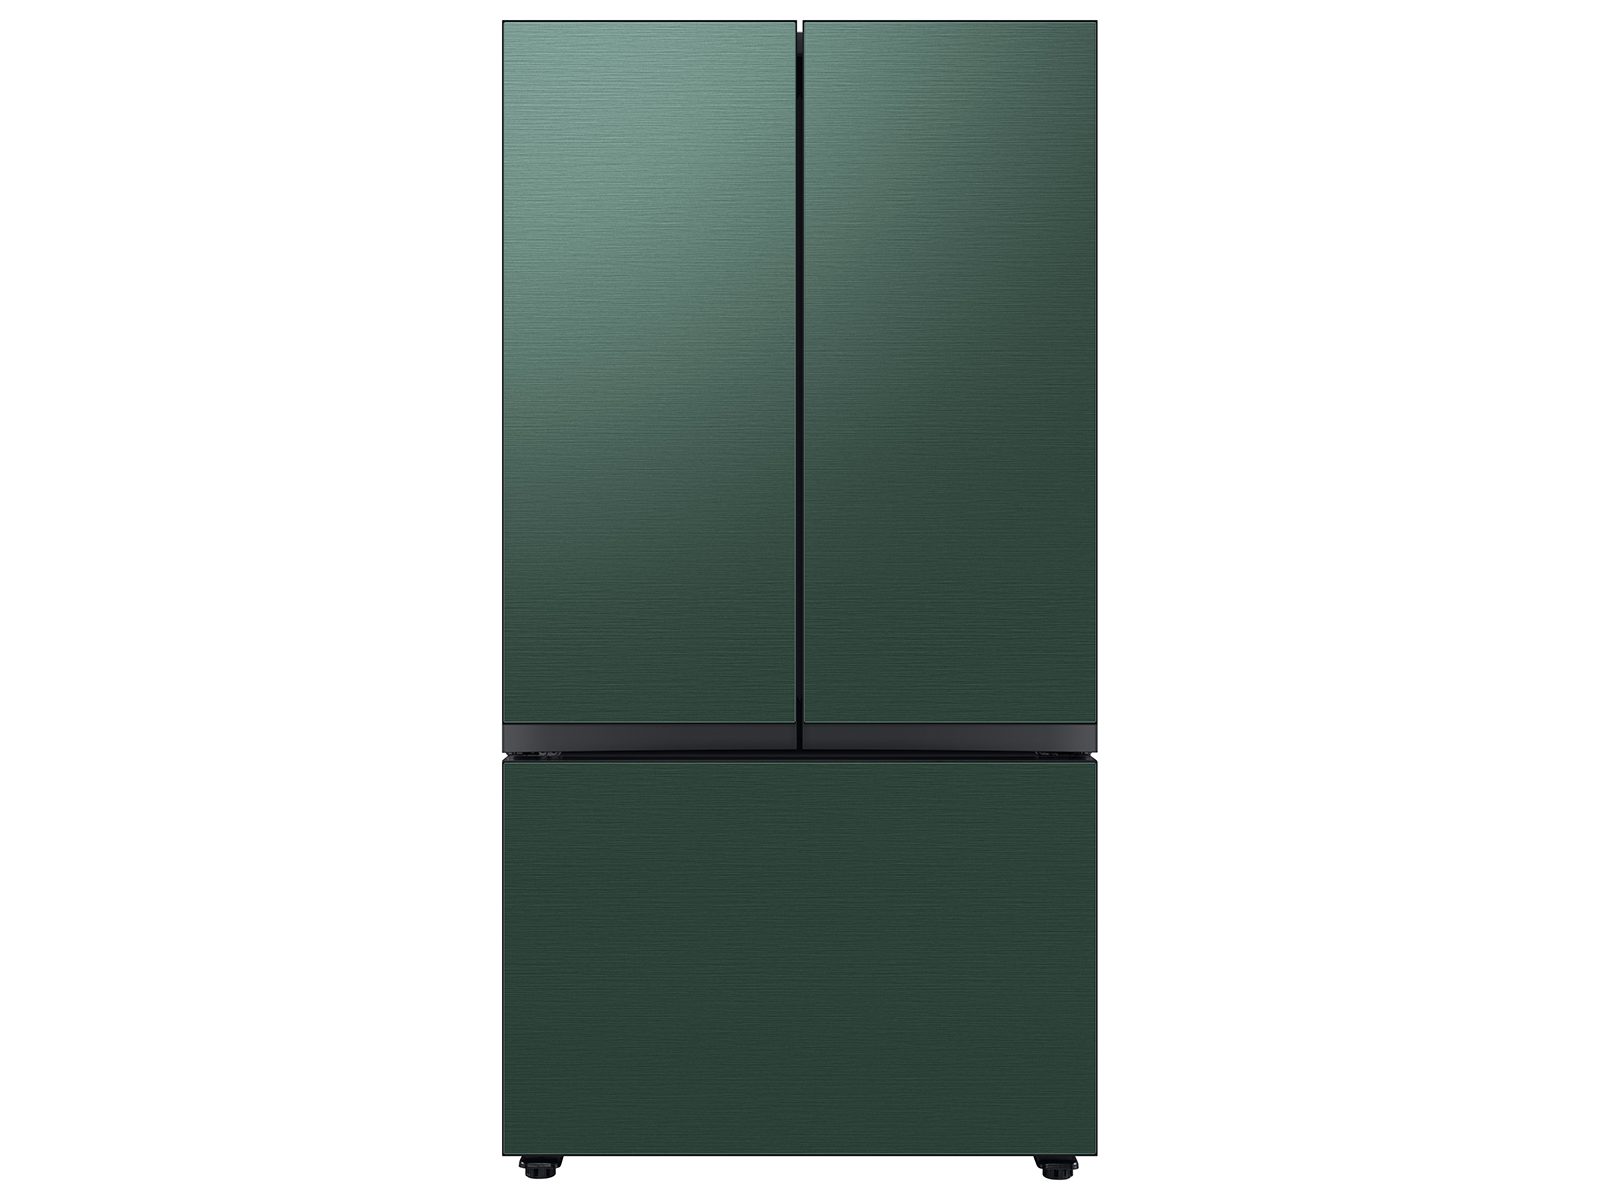 Bespoke 3-Door French Door Refrigerator (30 cu. ft.) with Beverage Center™ in Emerald Green Steel